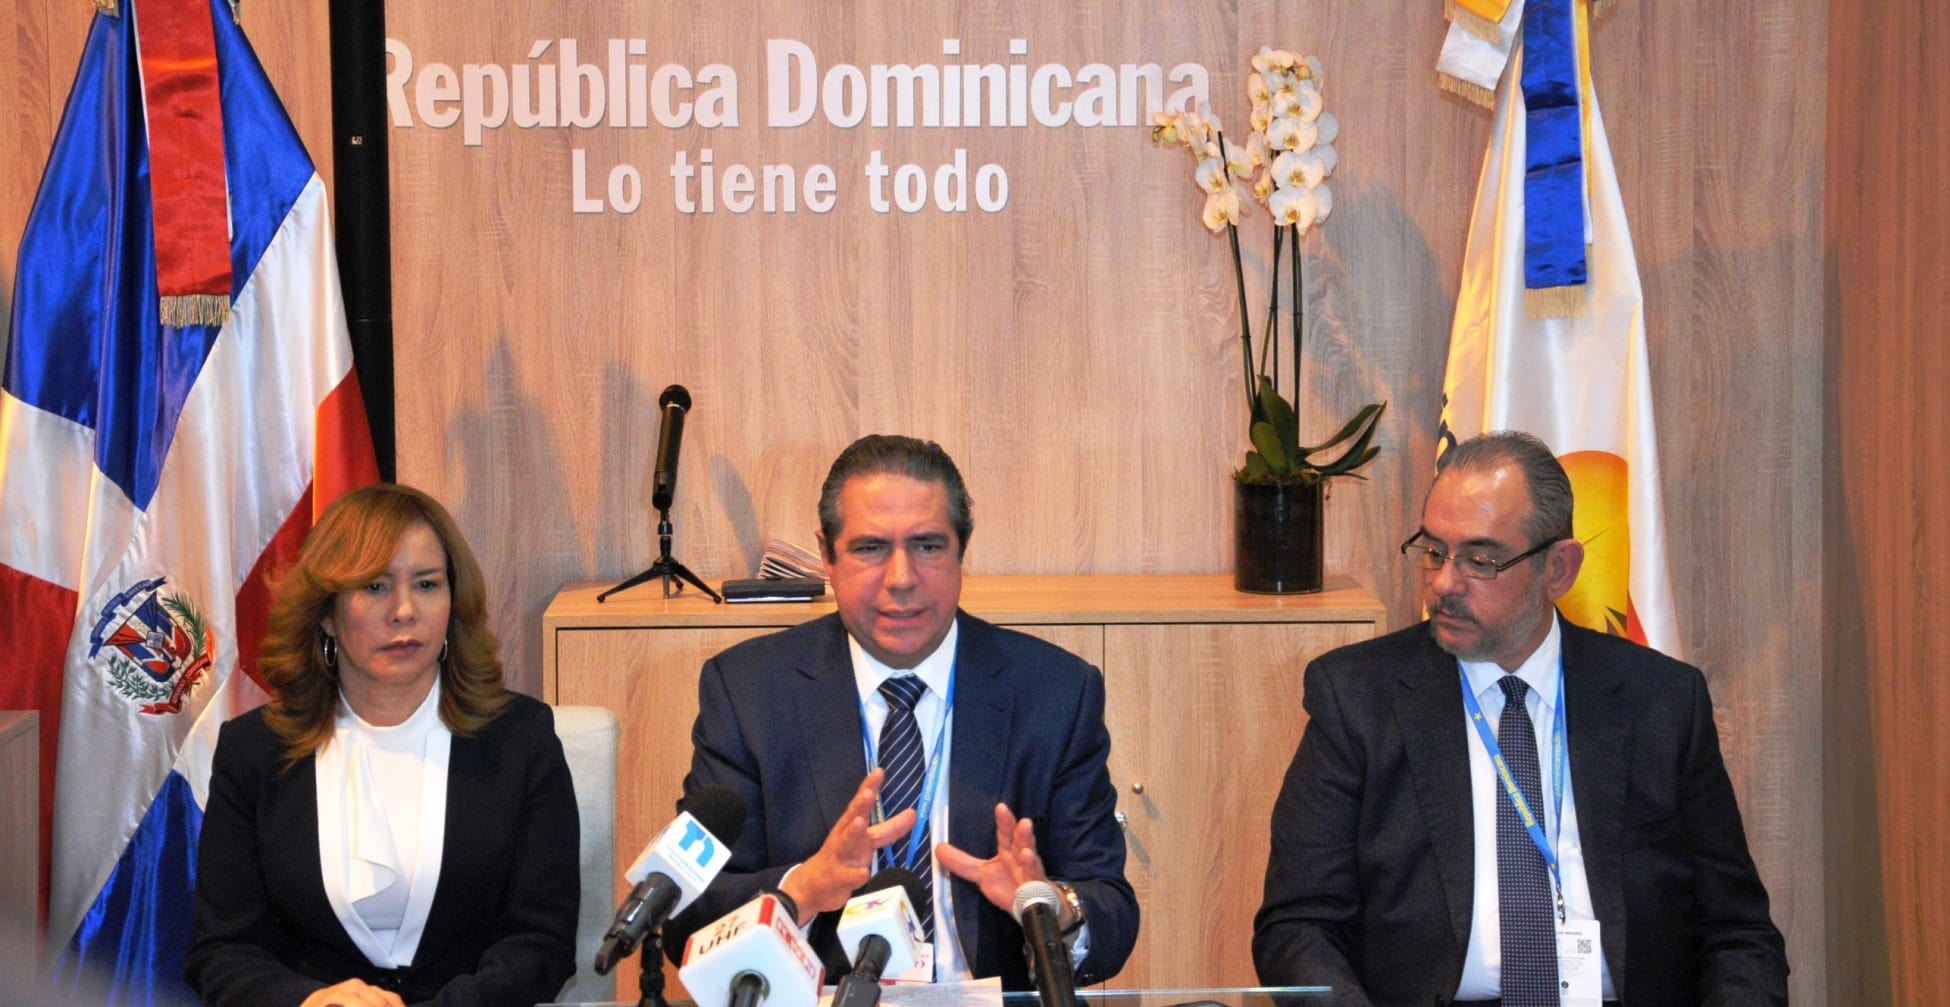 Rep. Dominicana se consolida en el sector inmobiliario